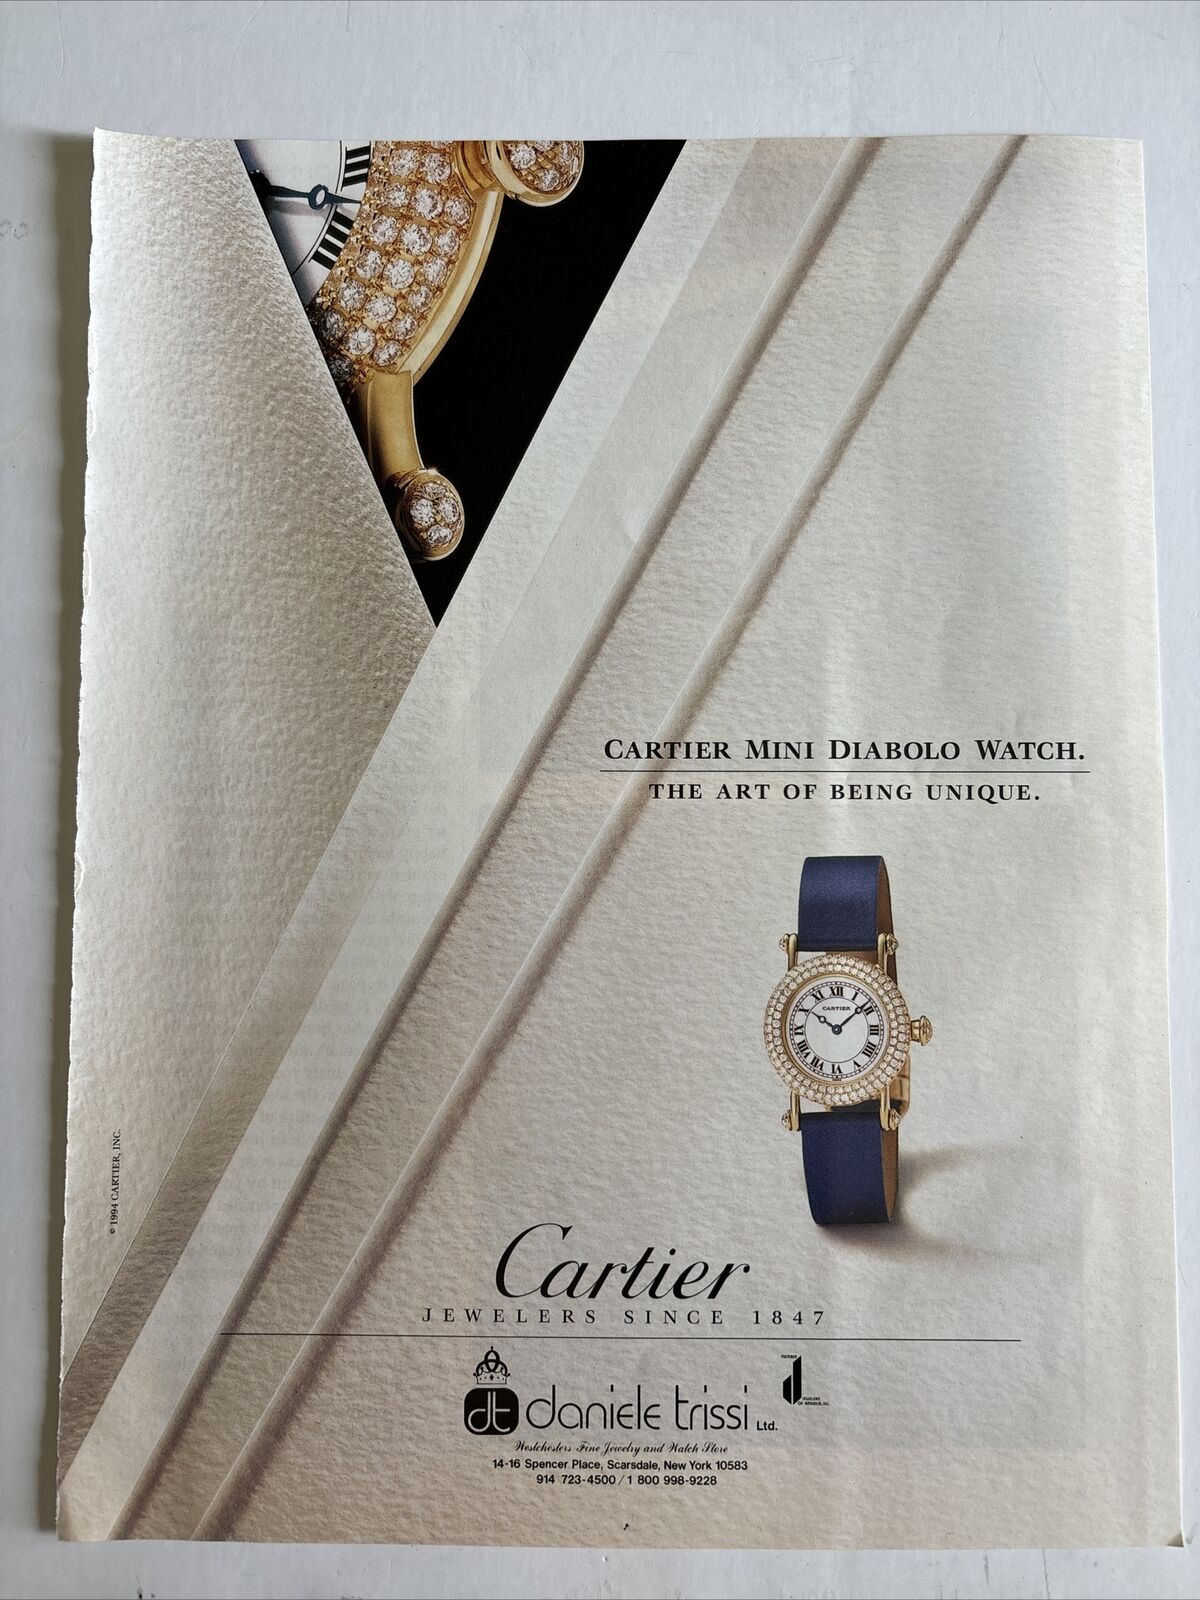 1994 Cartier: Mini Diabolo Watch Art of Being Unique Vintage Print Ad